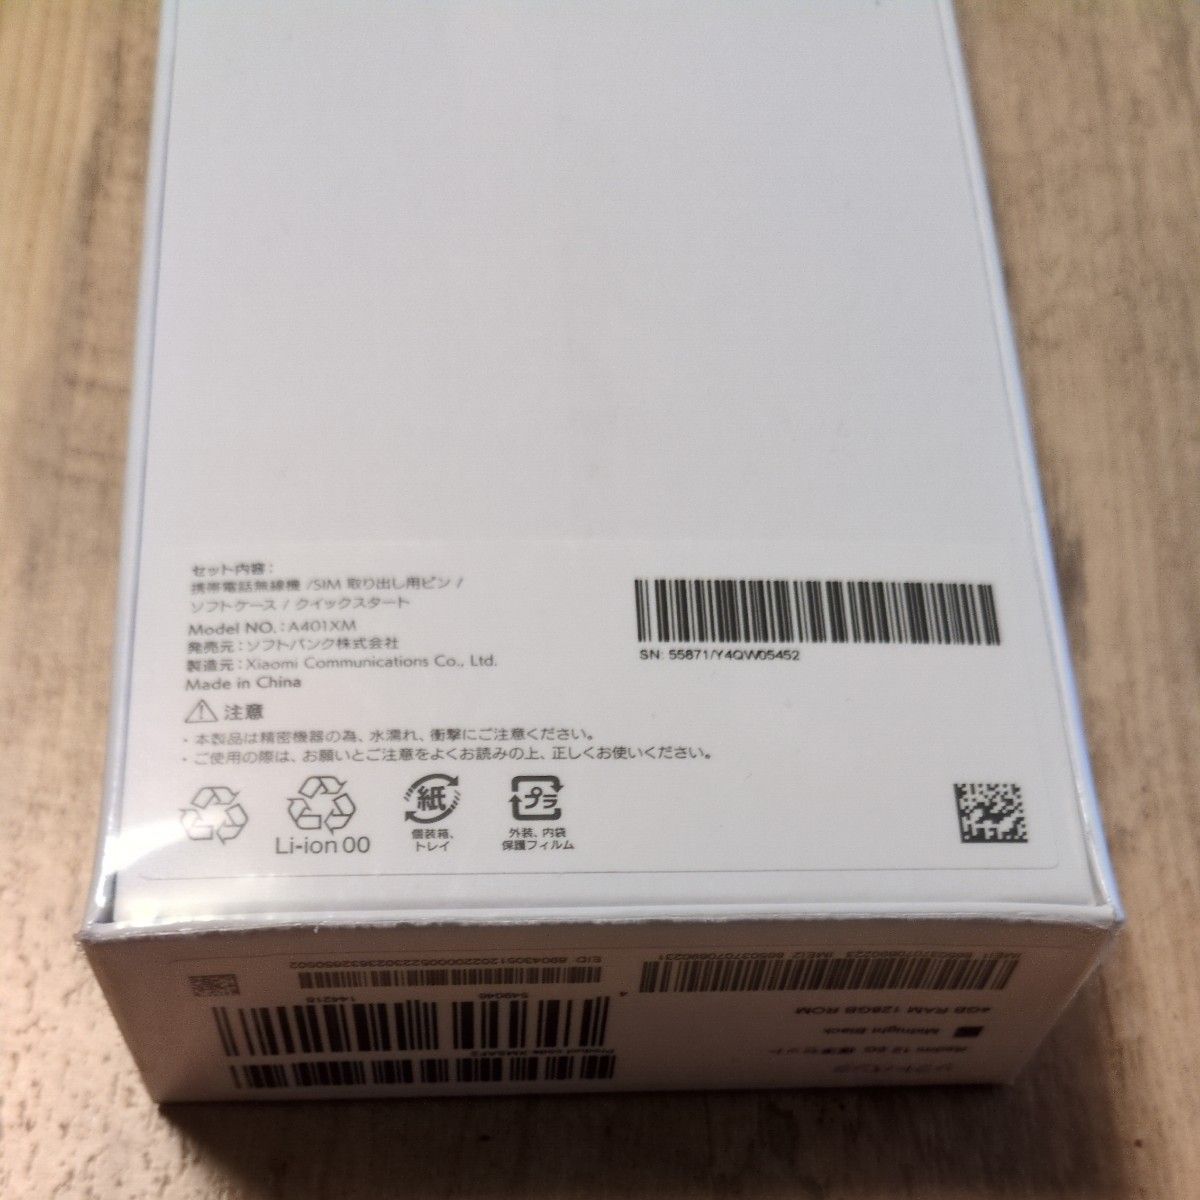  〈新品・未開封〉Redmi 12 5G 128GB ミッドナイトブラック SIM フリー